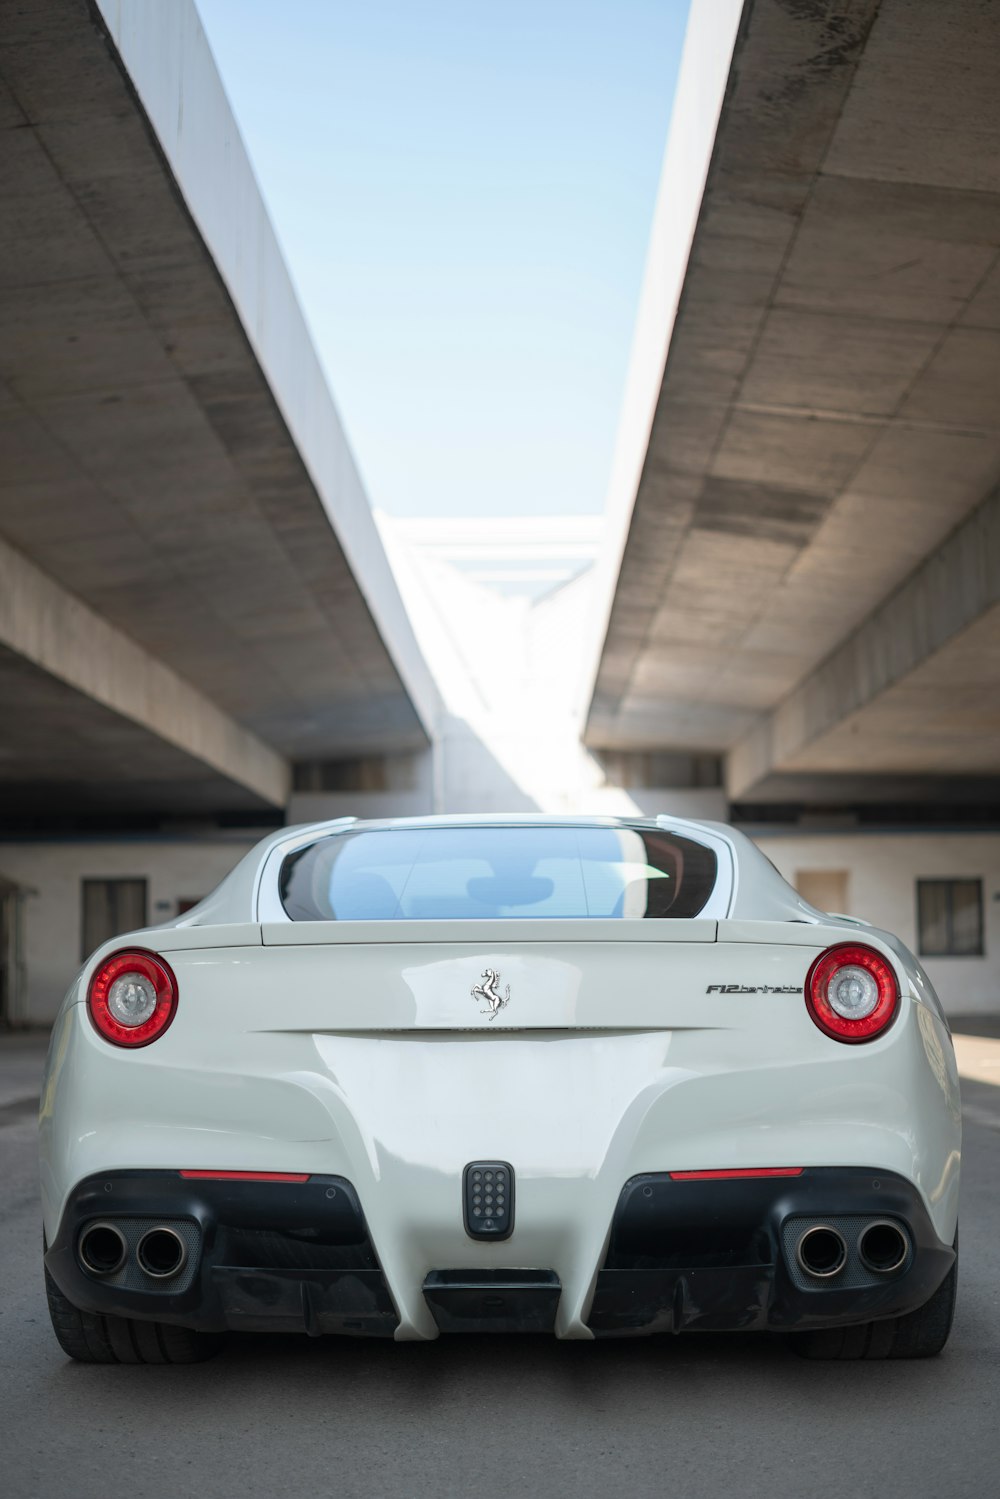 Véhicule Ferrari blanc garé sous le pont